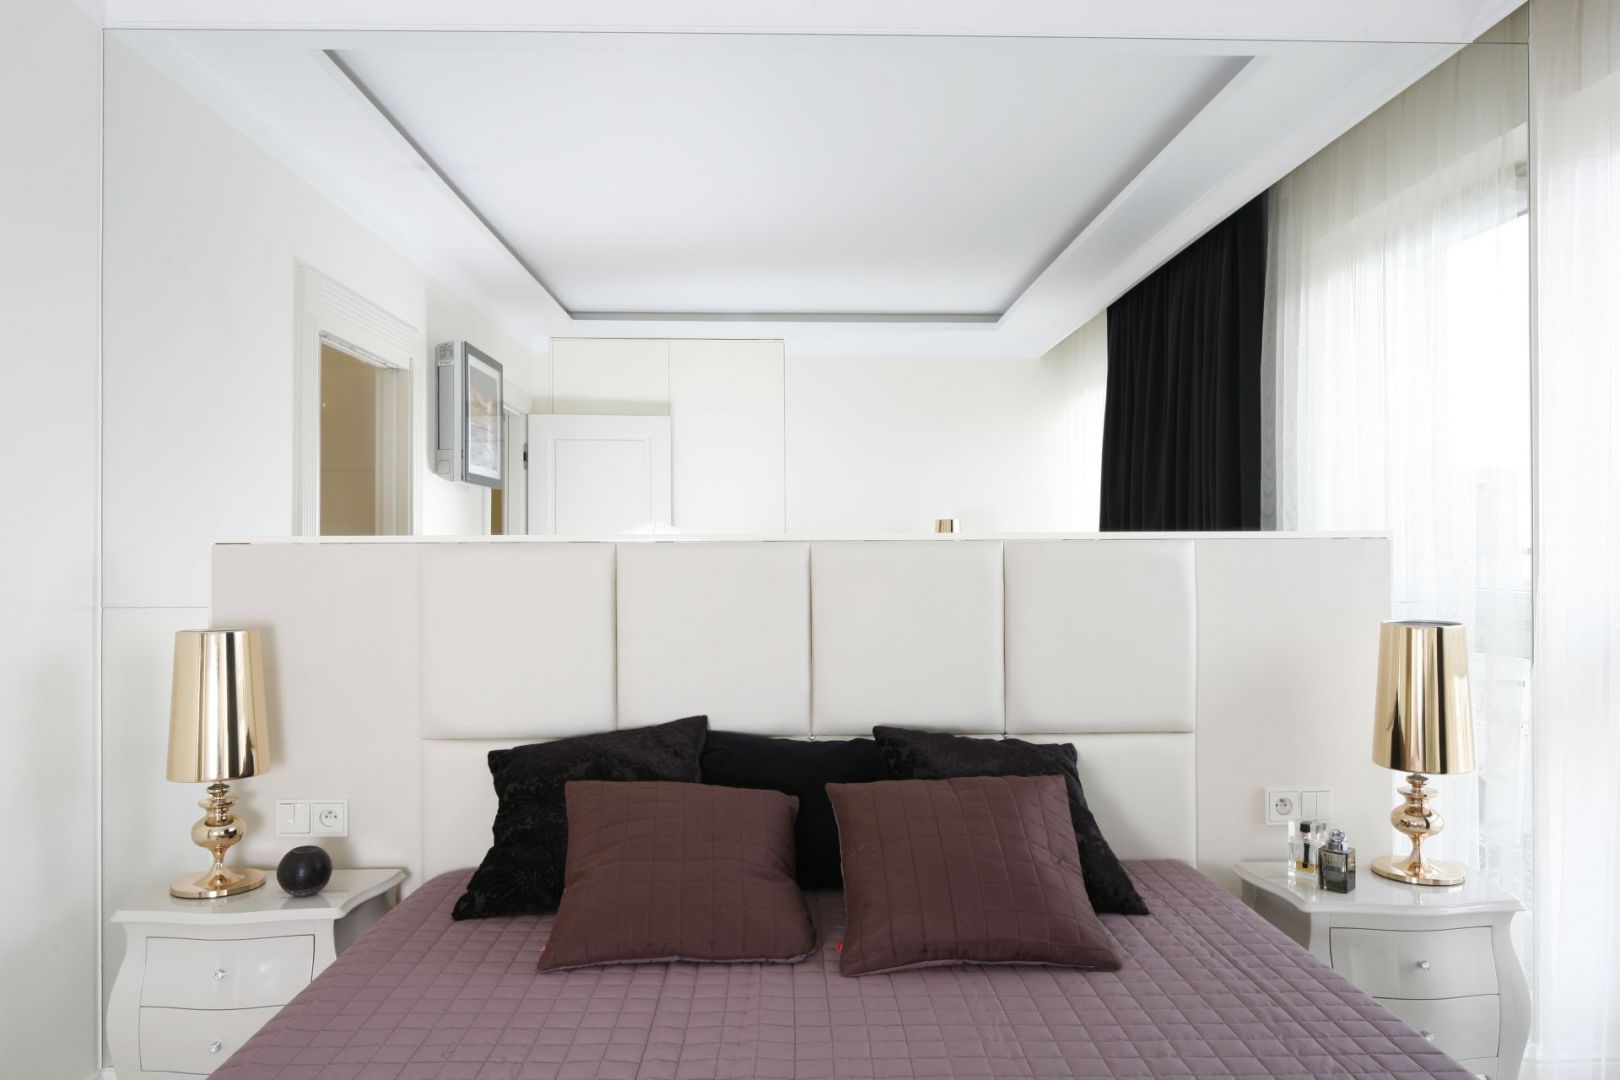 Lustro na ścianie nad łóżkiem optycznie powiększy pomieszczenie. Projekt: Katarzyna Uszok. Fot. Bartosz Jarosz